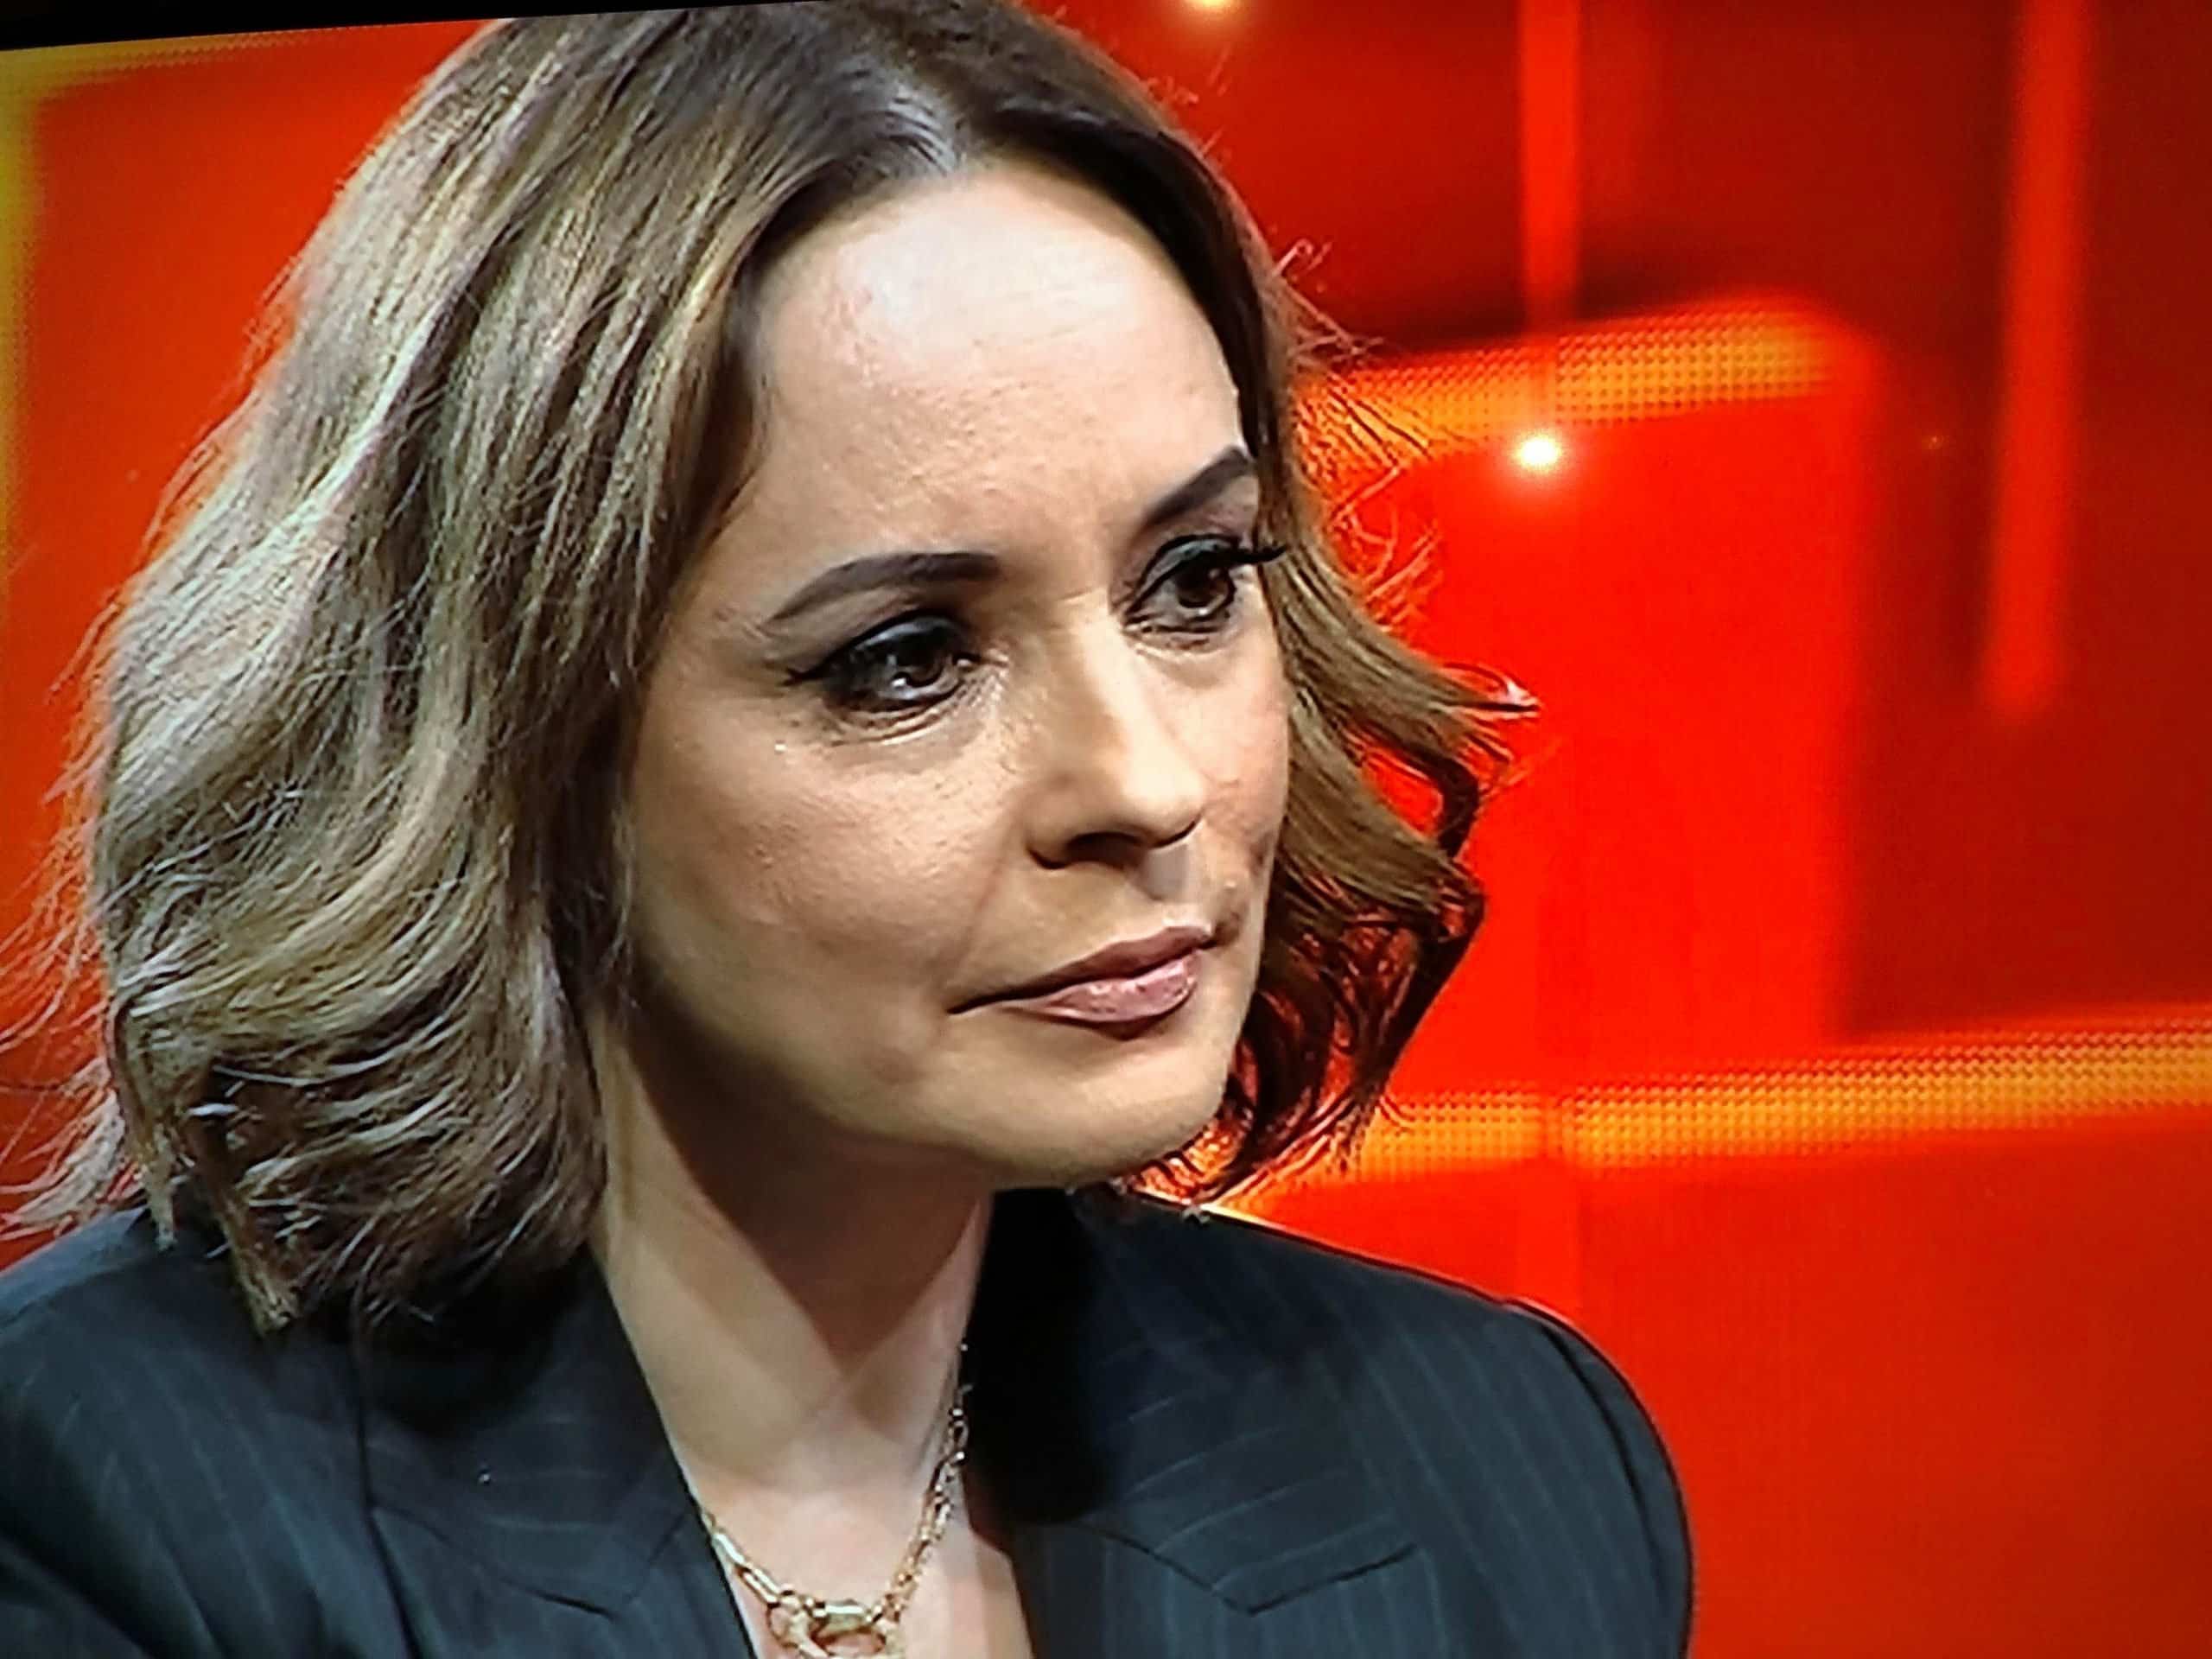 Oana Zăvoranu a desființat-o pe Andreea Marin în emisiunea lui Măruță: "Am murit în momentul ăla"